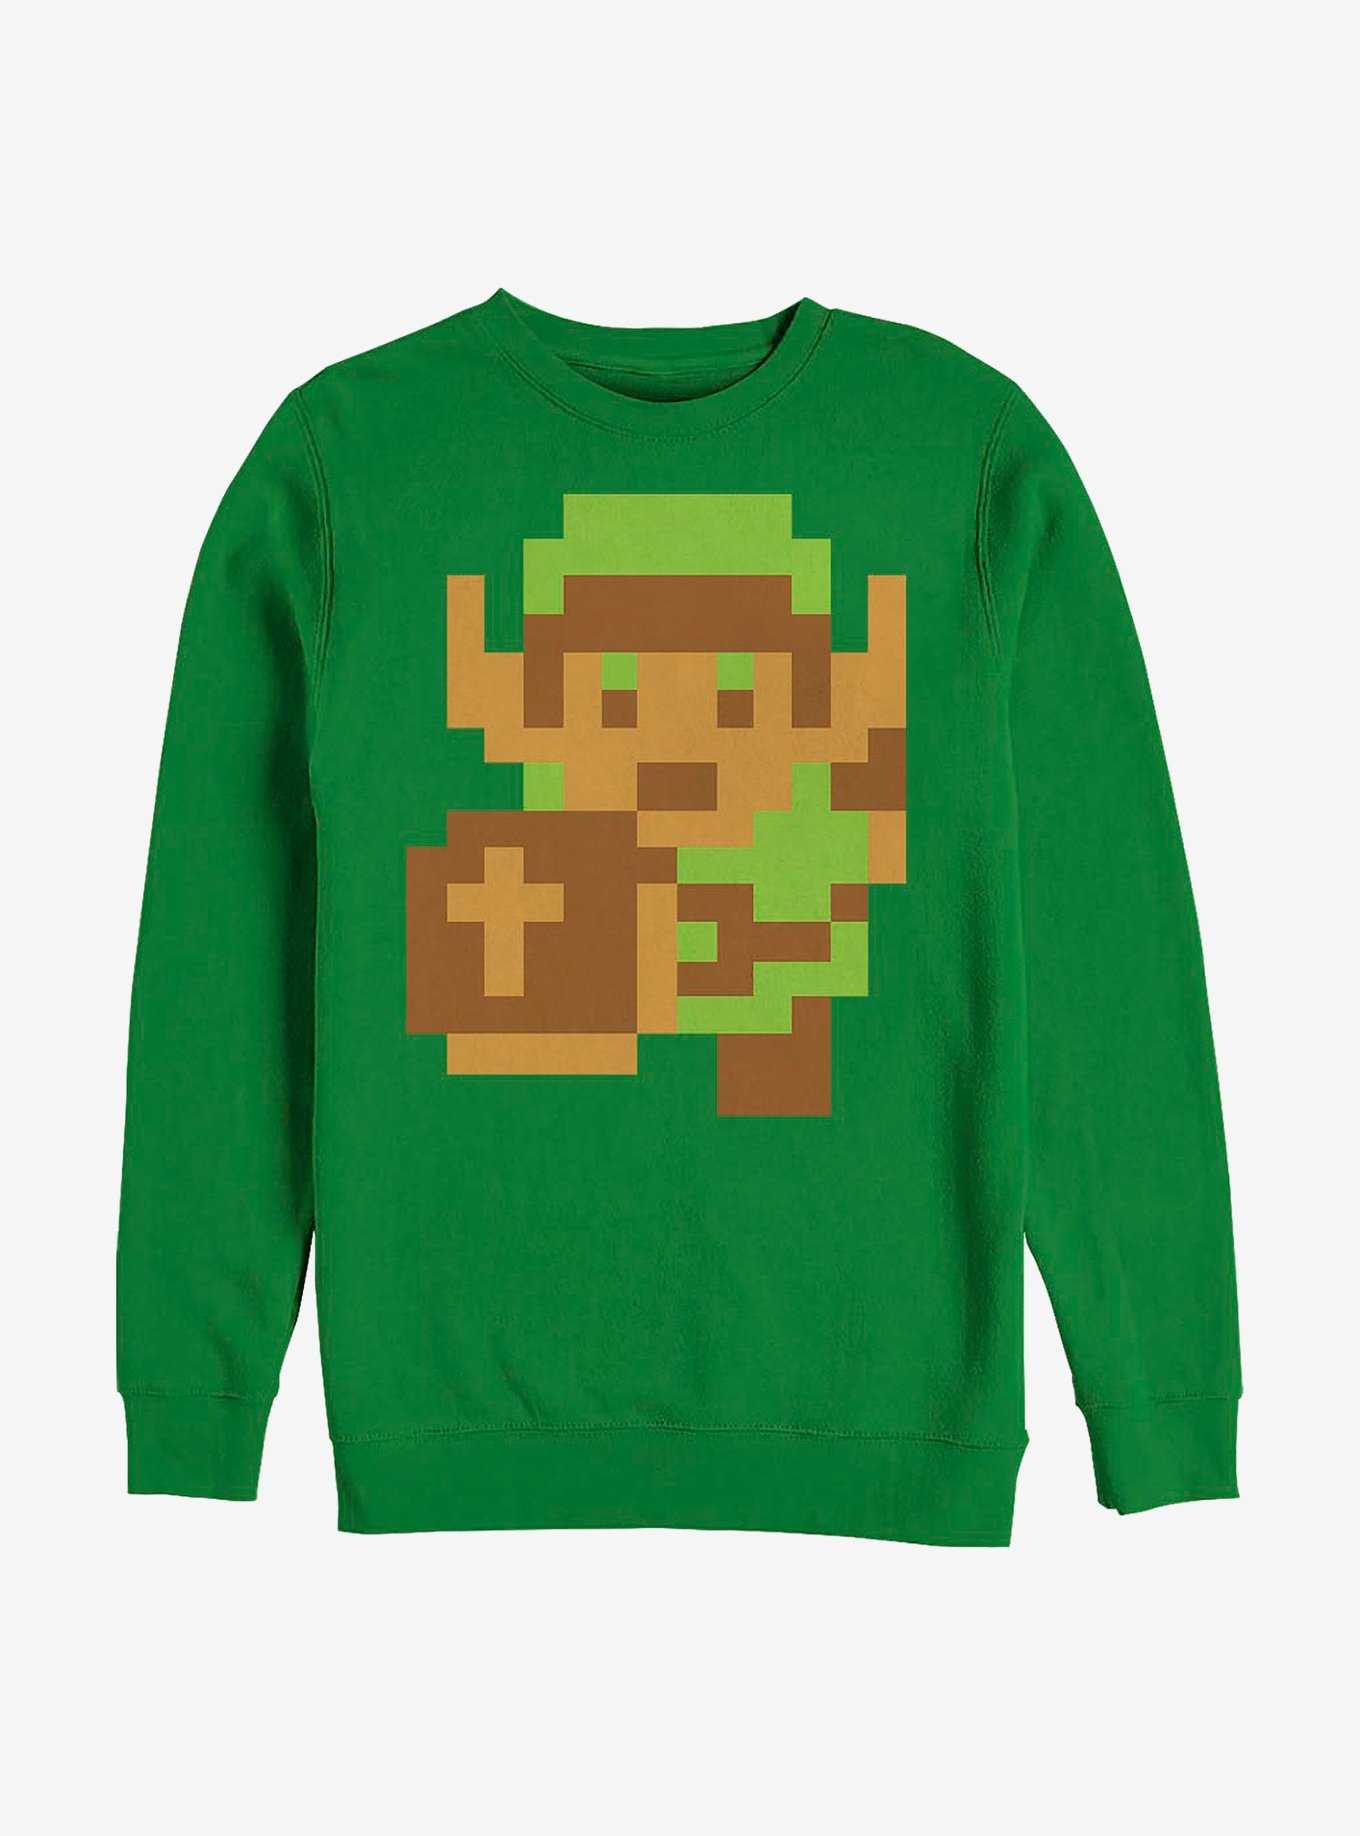 Nintendo Zelda Original Link Crew Sweatshirt, , hi-res